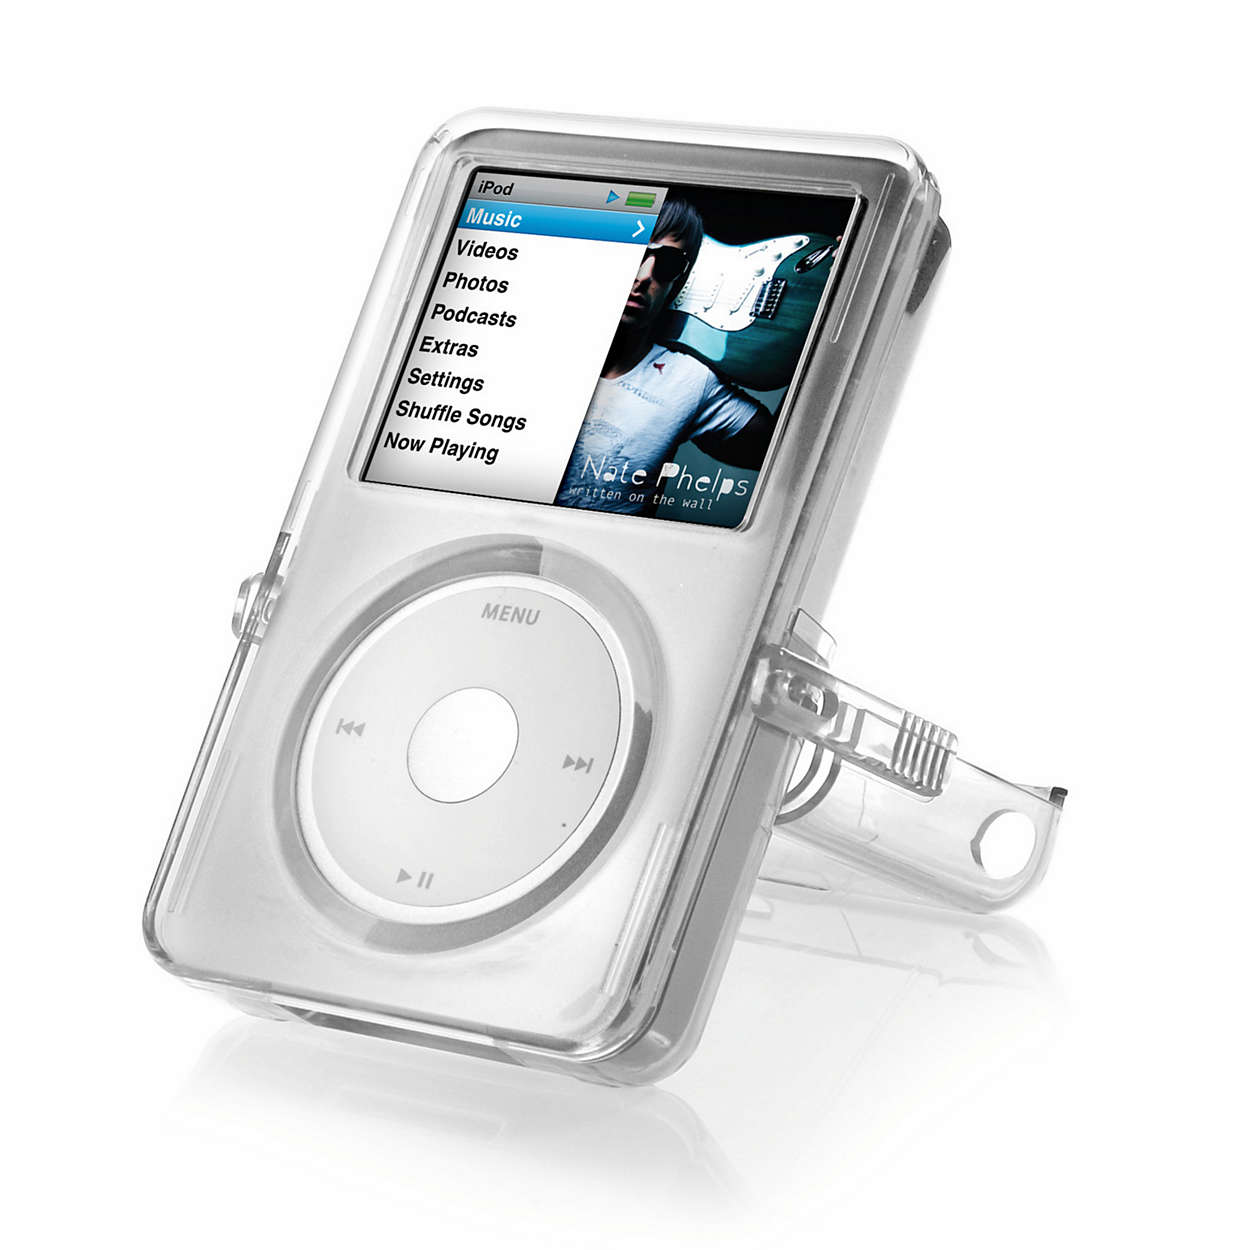 Protejaţi-vă dispozitivul iPod cu o carcasă transparentă